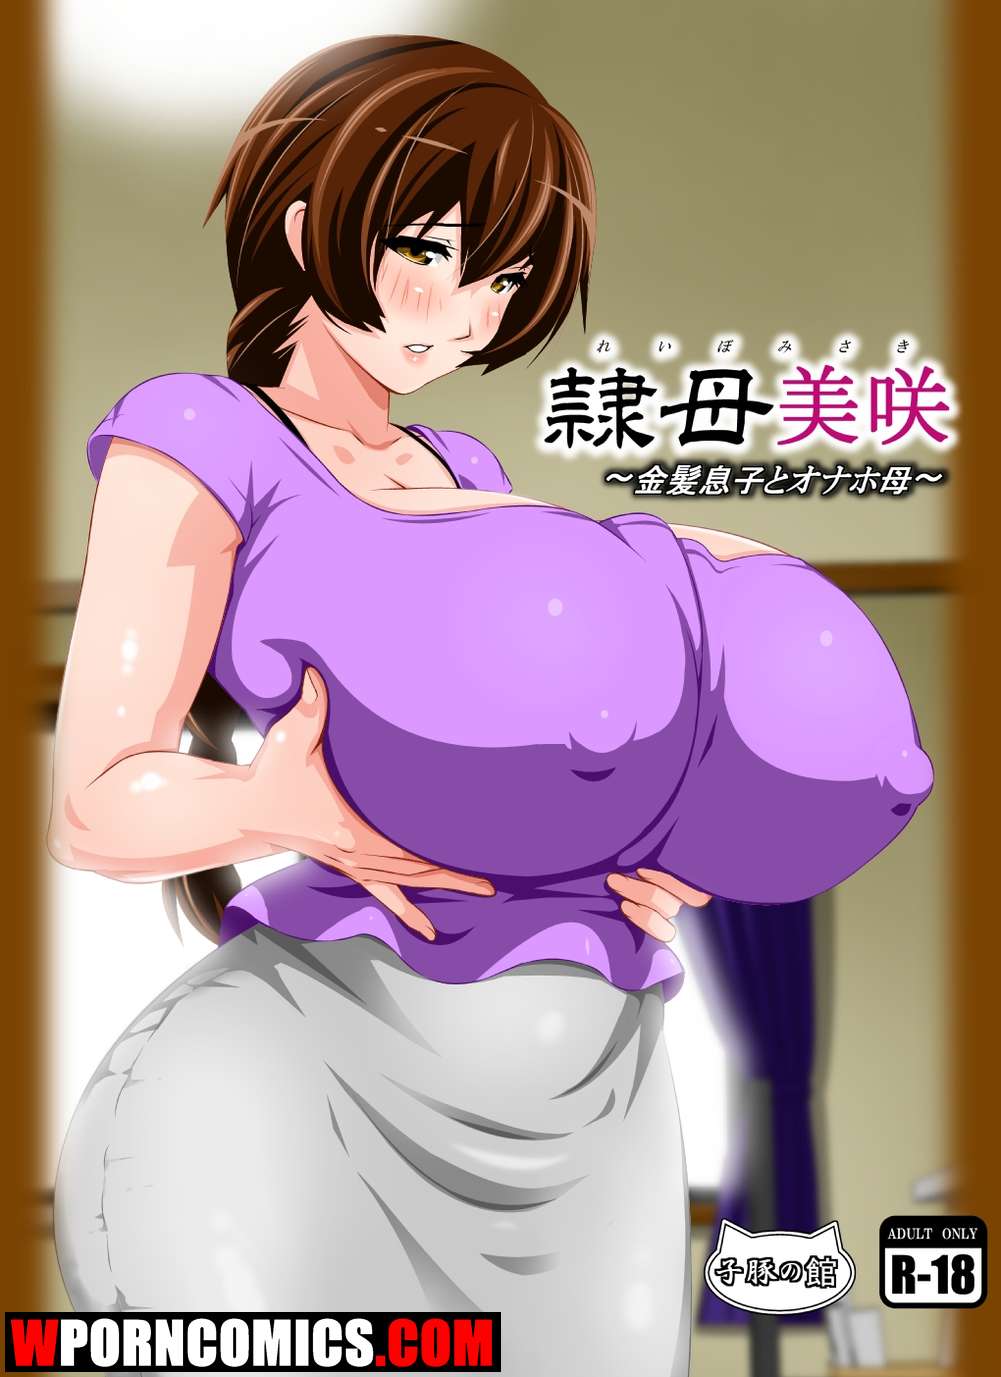 Misaki porn comic